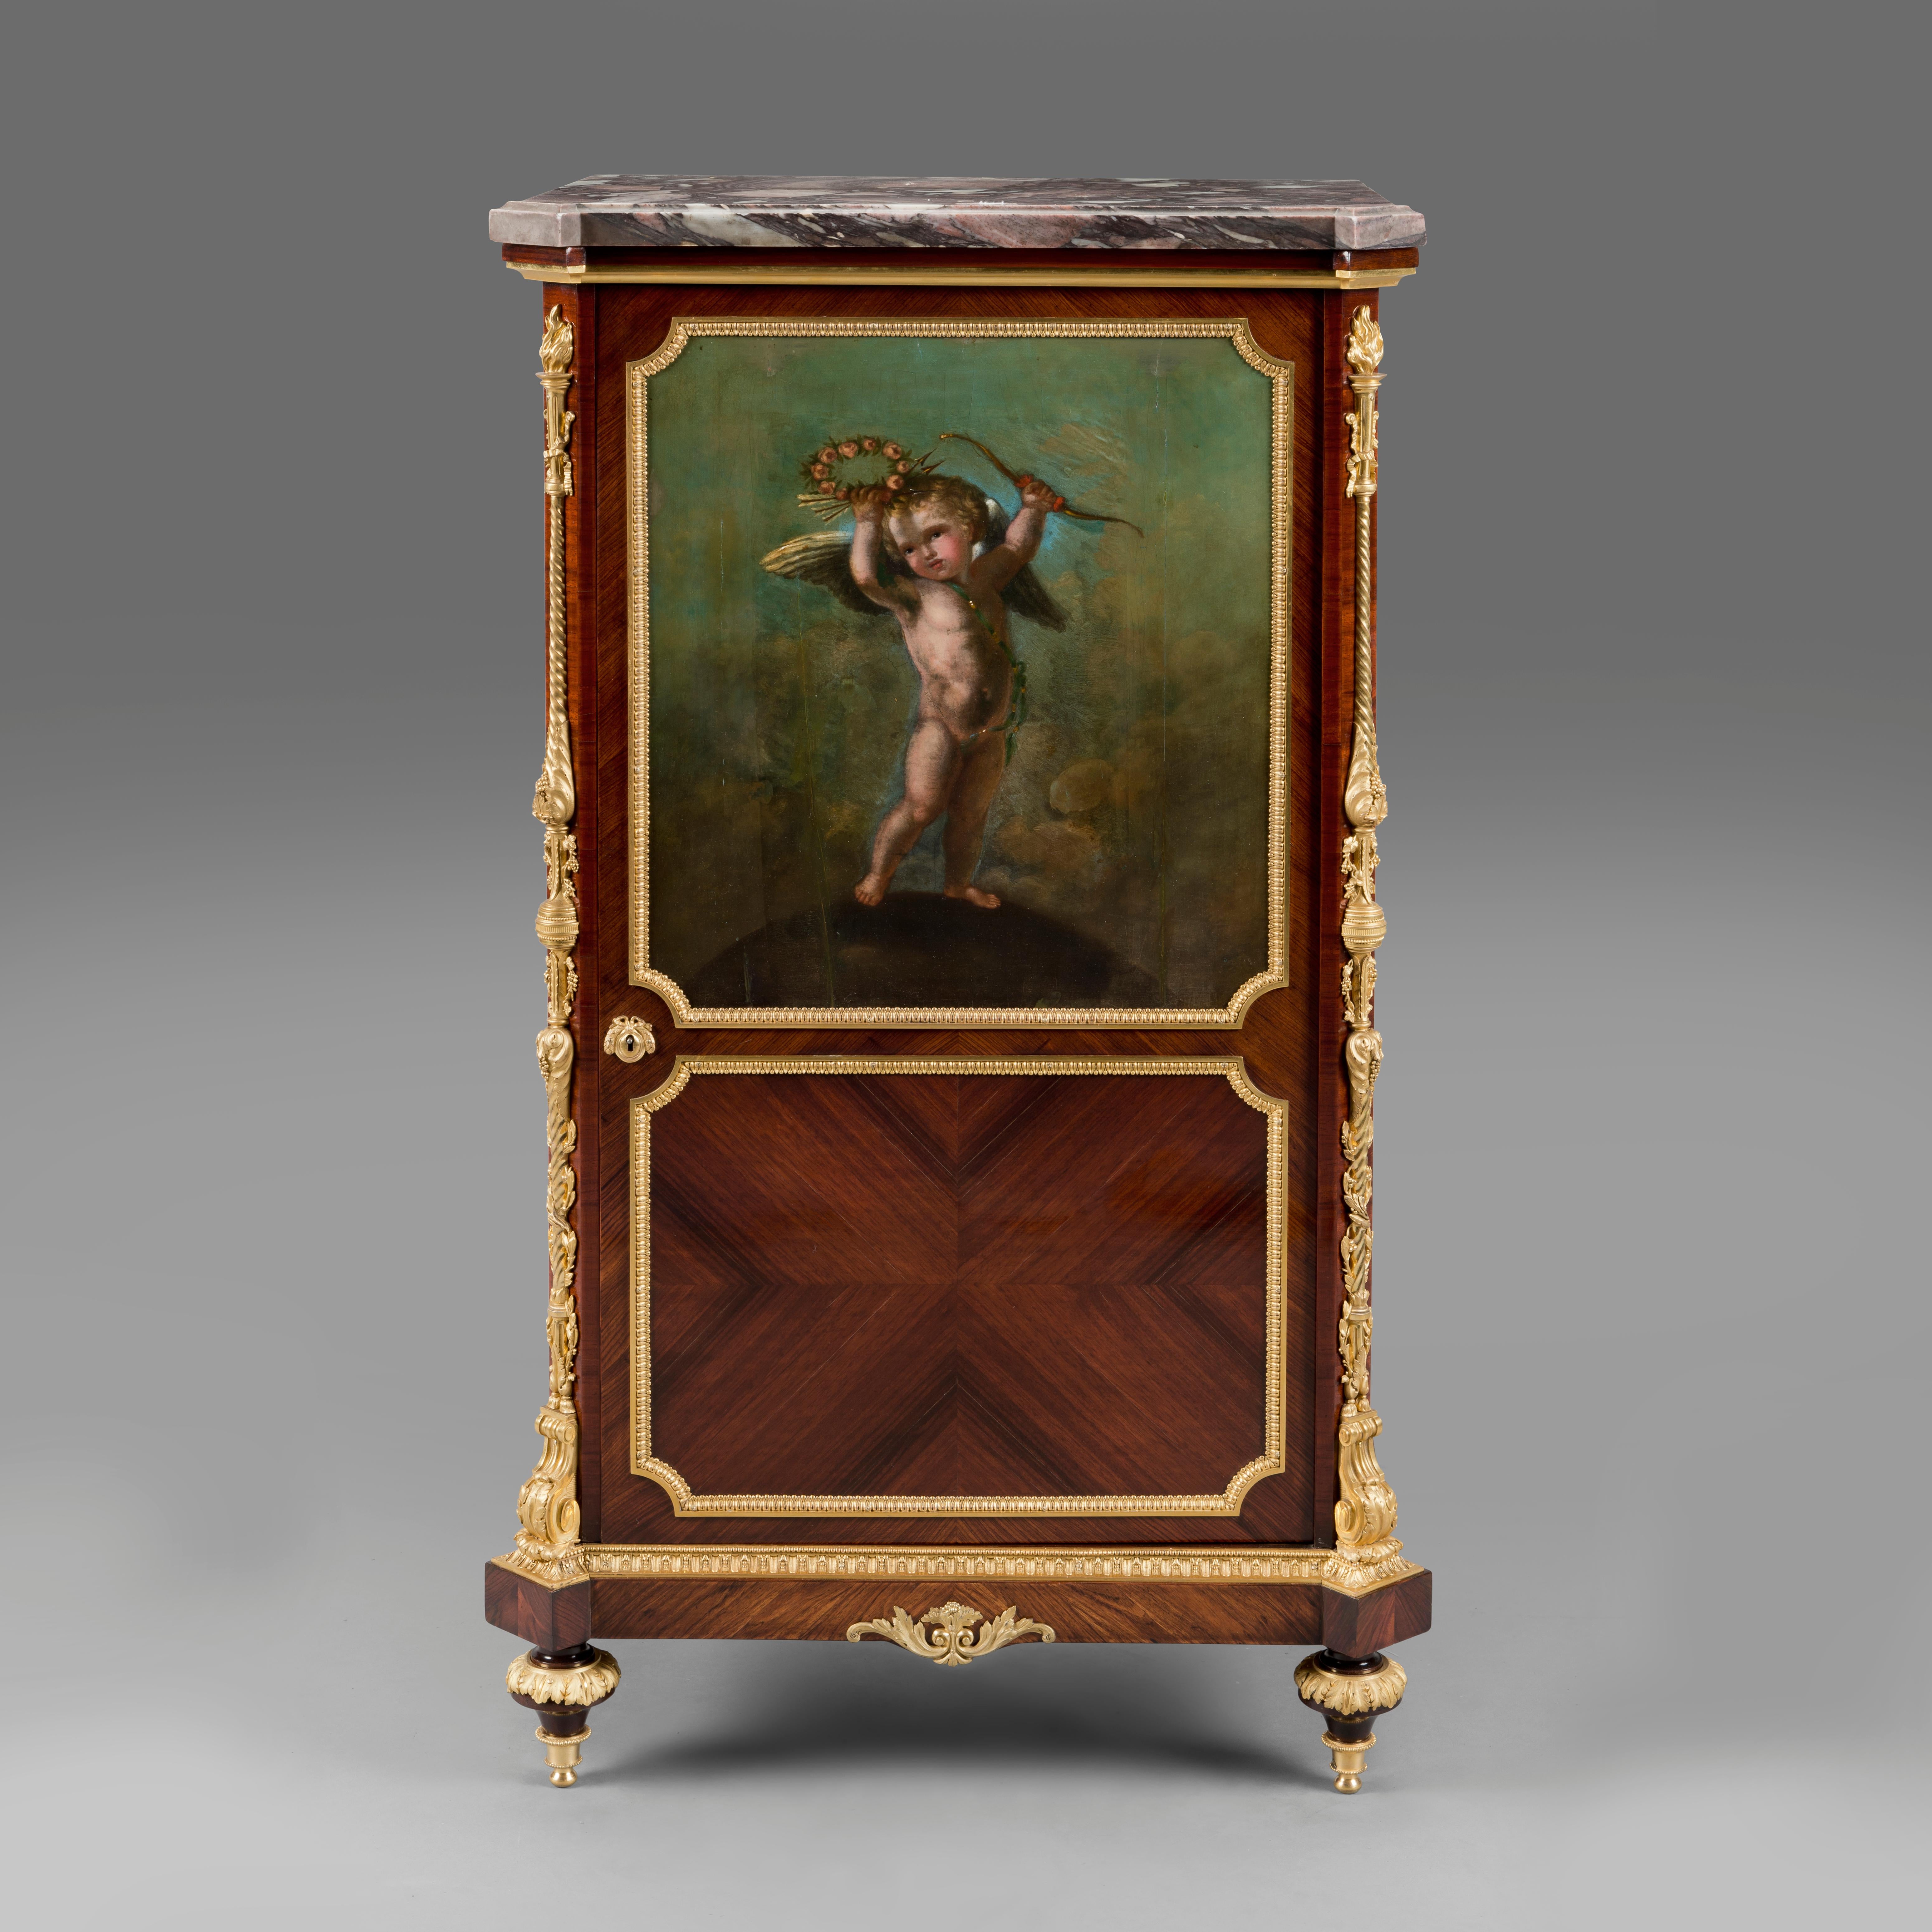 Un beau cabinet de style Louis XVI monté en bronze doré avec un panneau en Vernis martin, à la manière de Paul Sormani.

Cet élégant meuble possède un plateau rectangulaire en marbre Eeravezza avec des coins inclinés au-dessus d'une caisse